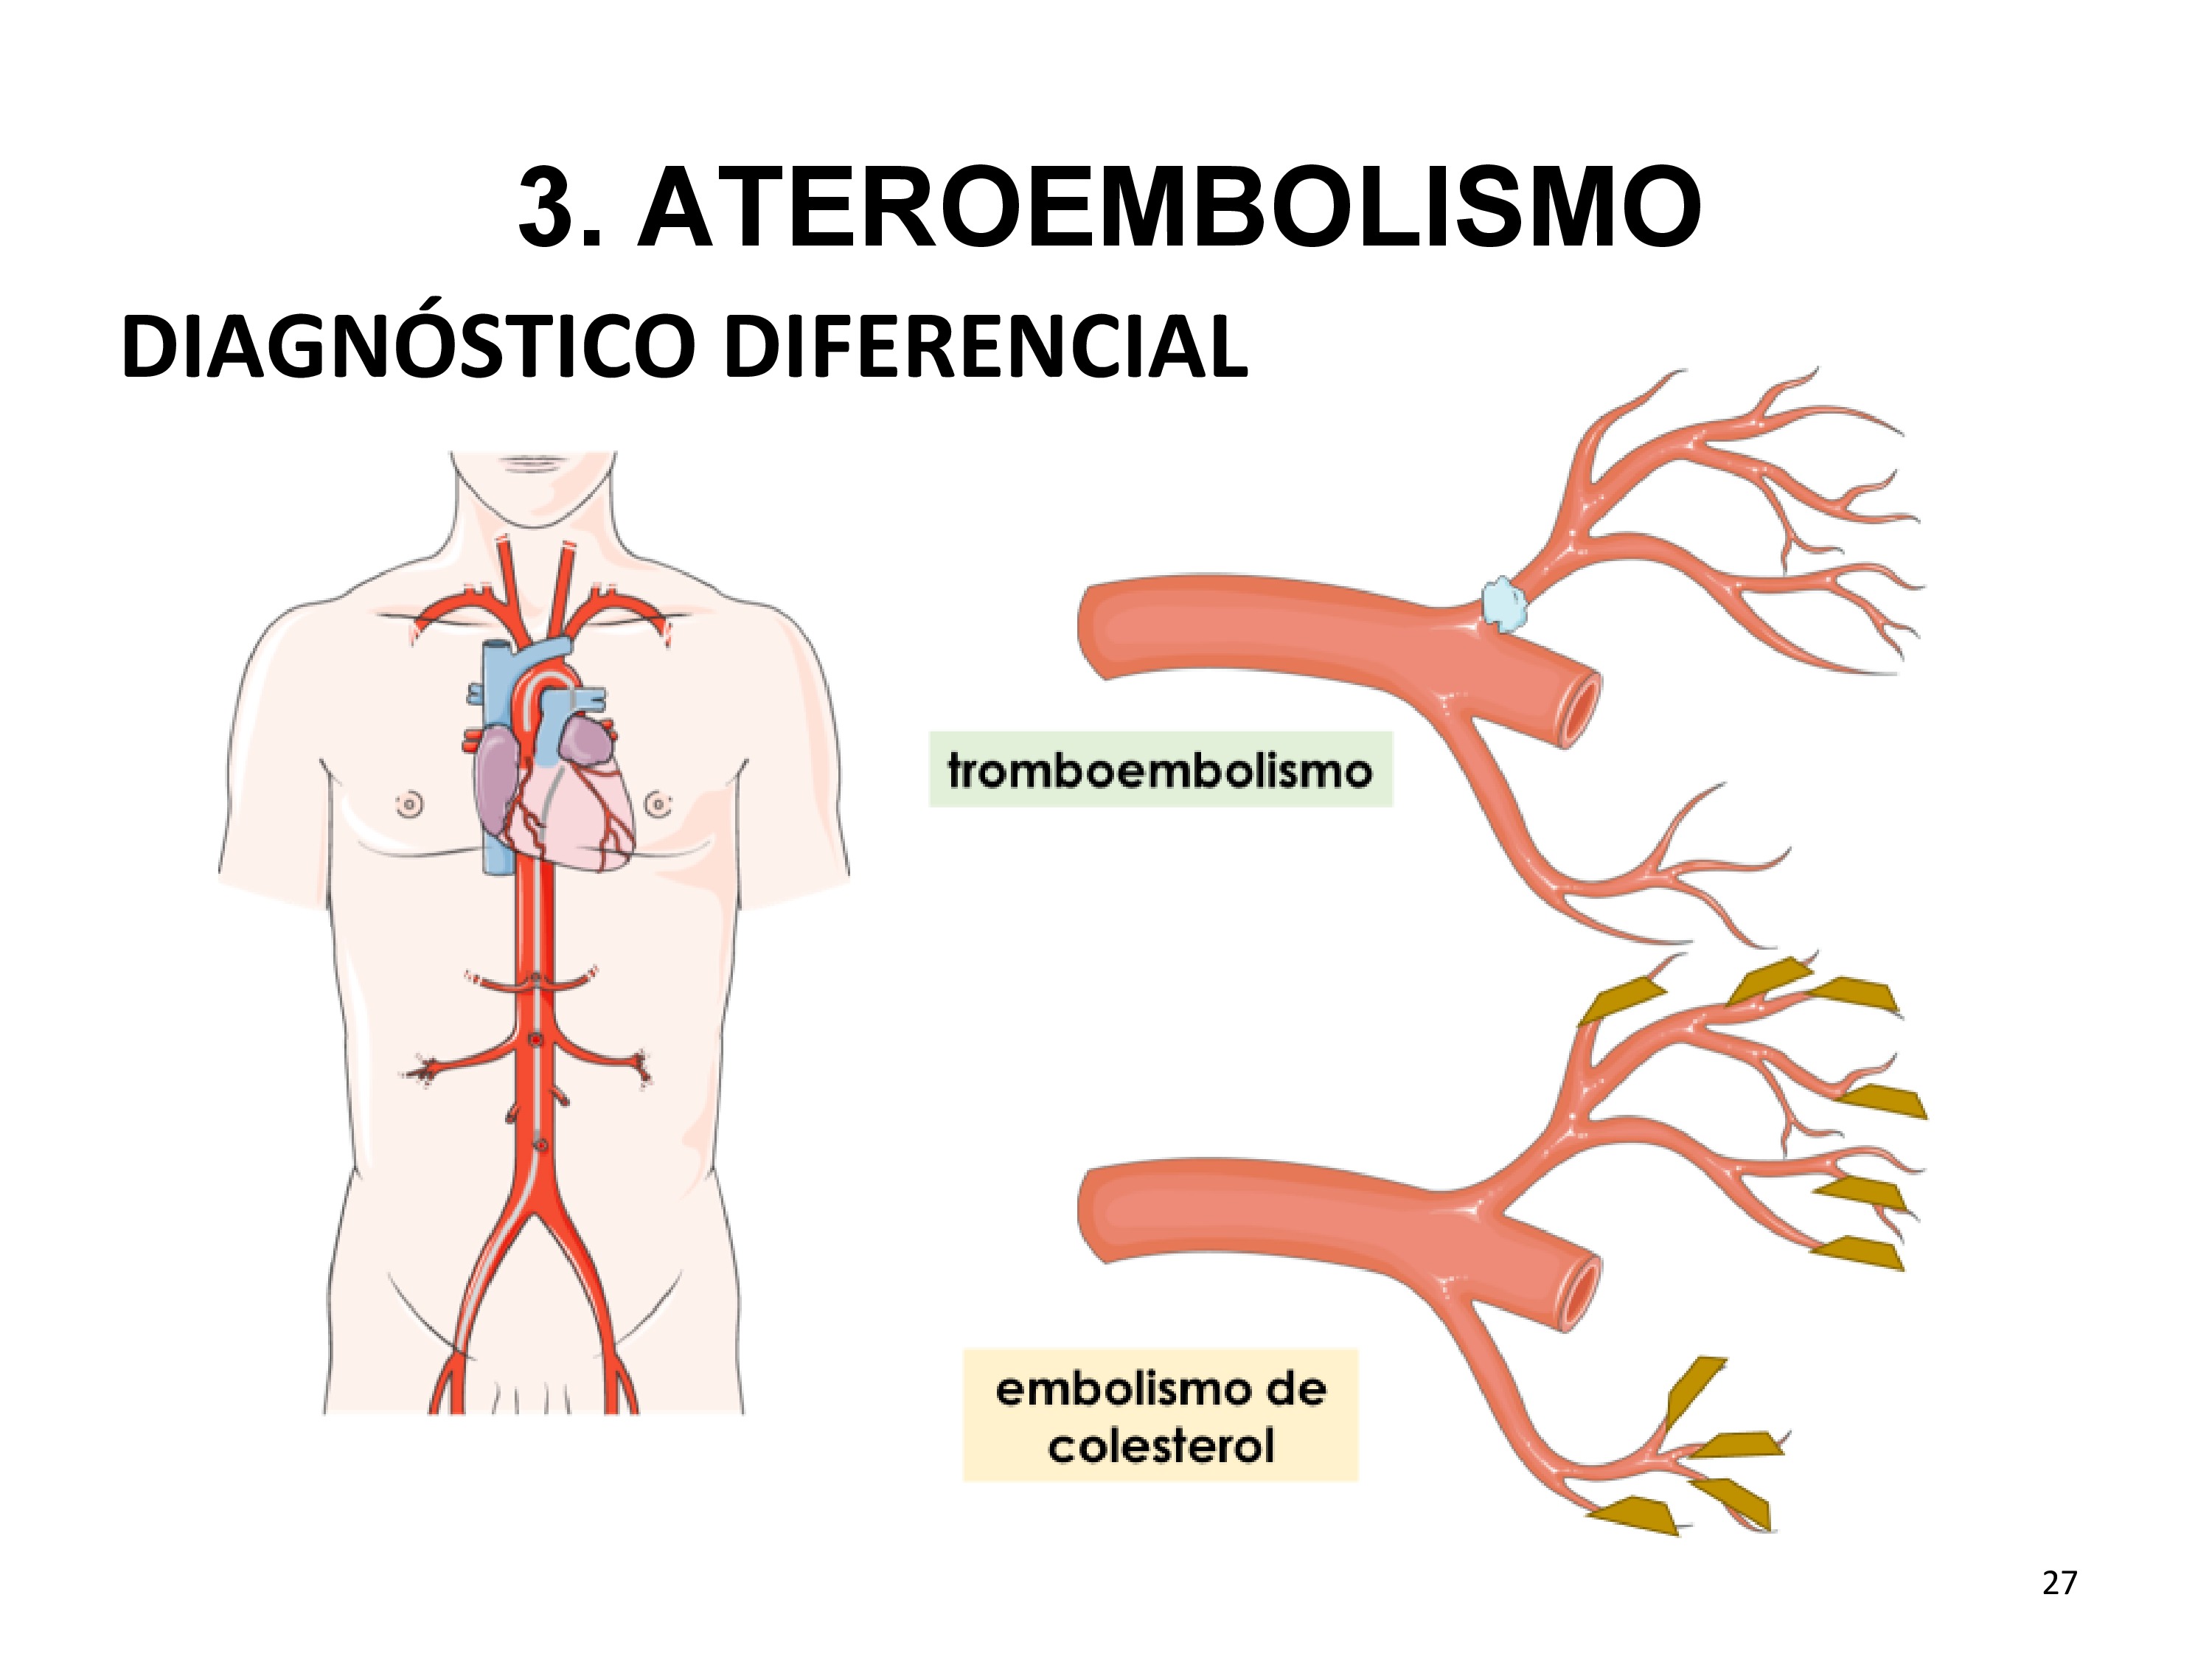 Dentro del diagnóstico diferencial estaría el tromboembolismo. La diferencia radica en la extensión de la isquemia y la región afecta. El tromboembolismo generalmente afecta a arterias de mayor calibre, generando isquemia en el lecho distal y puede verse en un TC (dependiendo del tamaño y localización) y además puede tener tratamiento con fibrinólisis o trombectomía. En cambio, el embolismo de colesterol afecta a lechos distales ya que los cristales son microscópicos, por lo cual no se evidencia en un TC y la recuperación es peor dado el infiltrado inflamatorio asociado que produce.